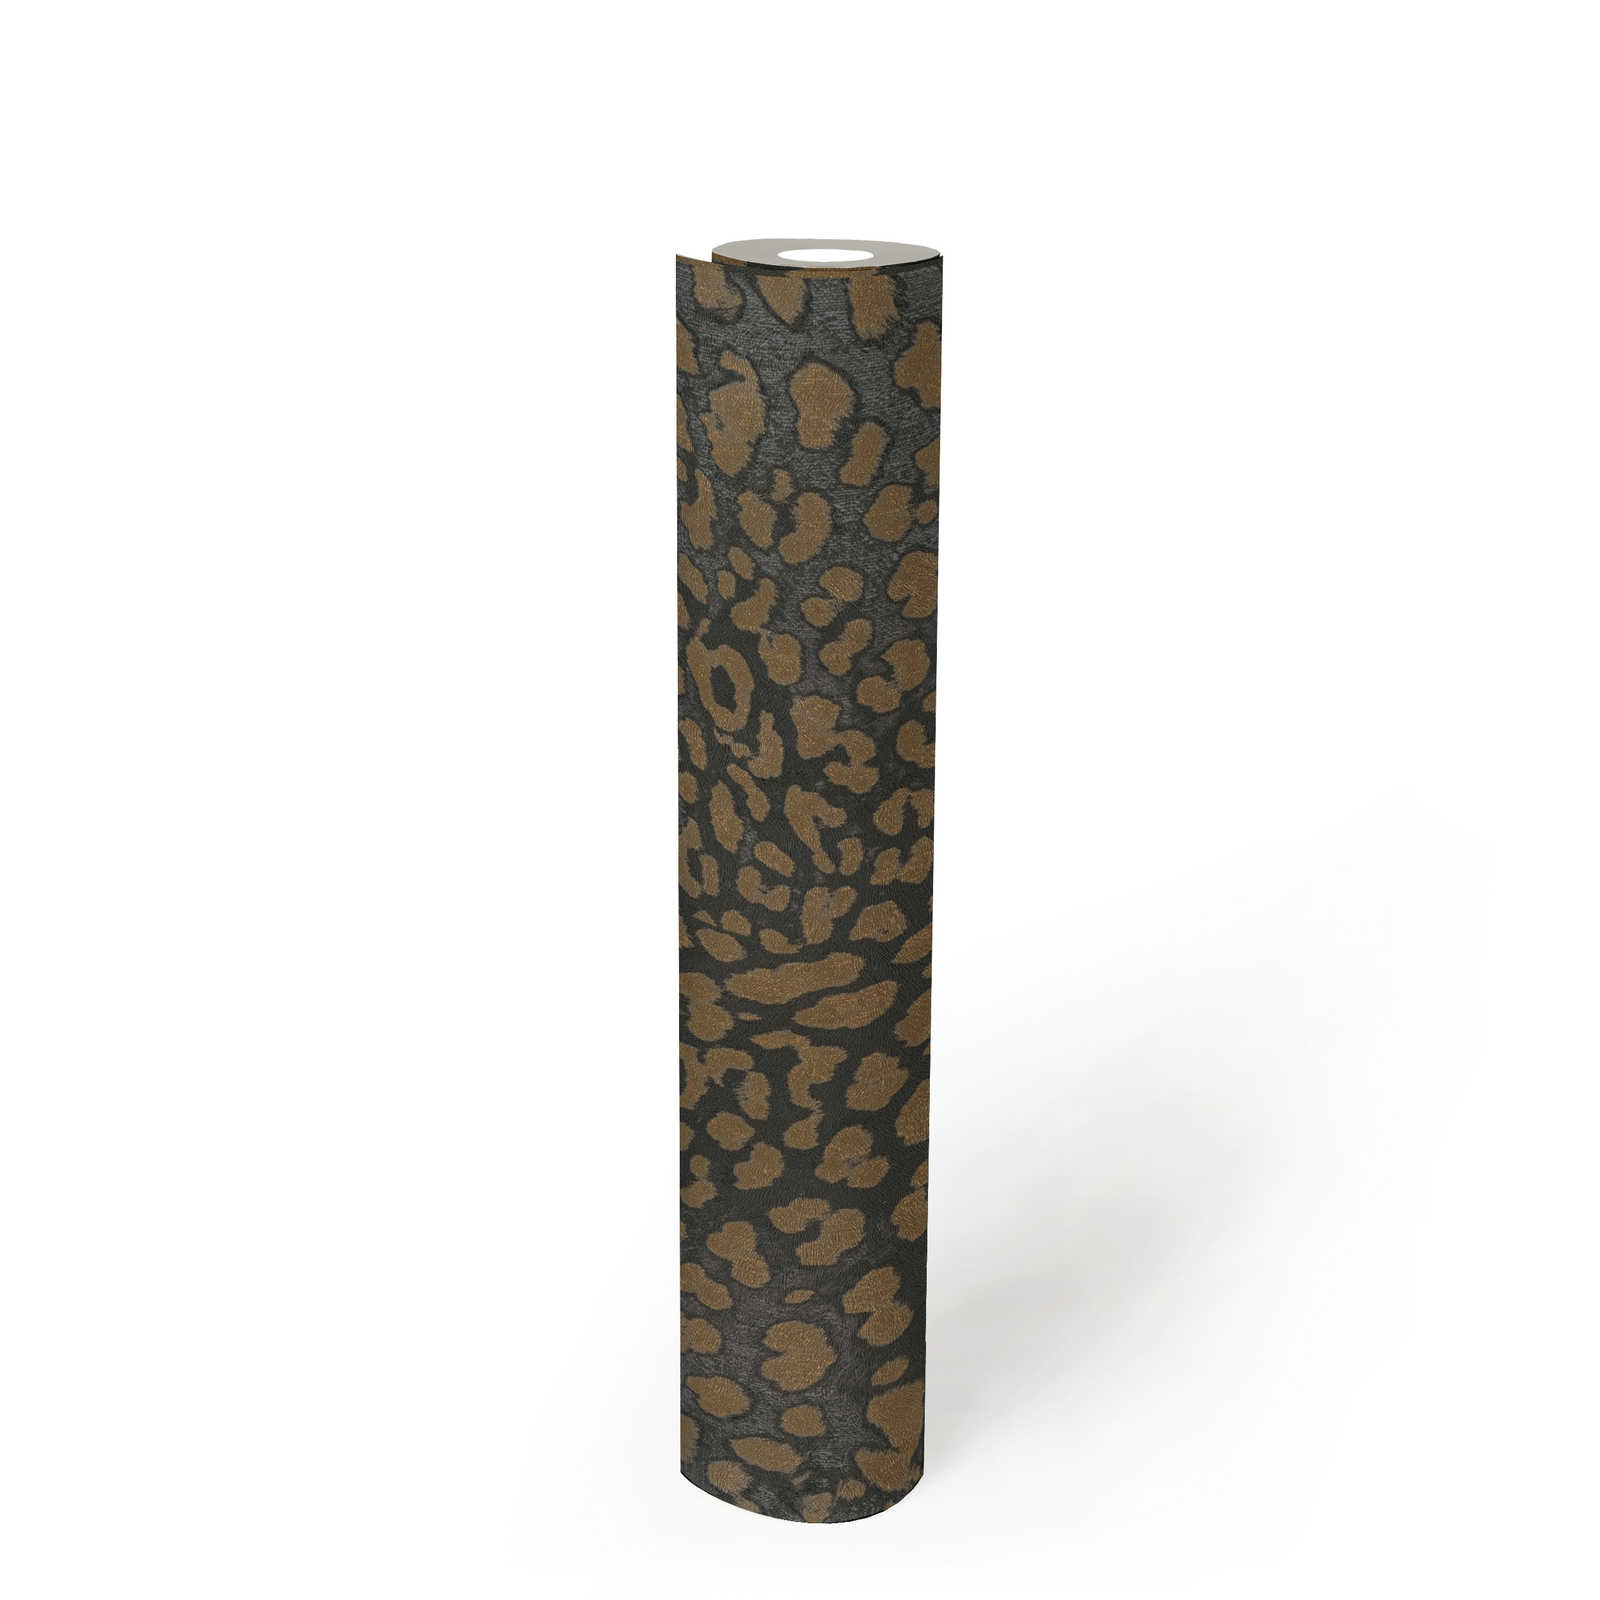             Animal Print Tapete mit Metallic-Muster – Grau, Gold
        